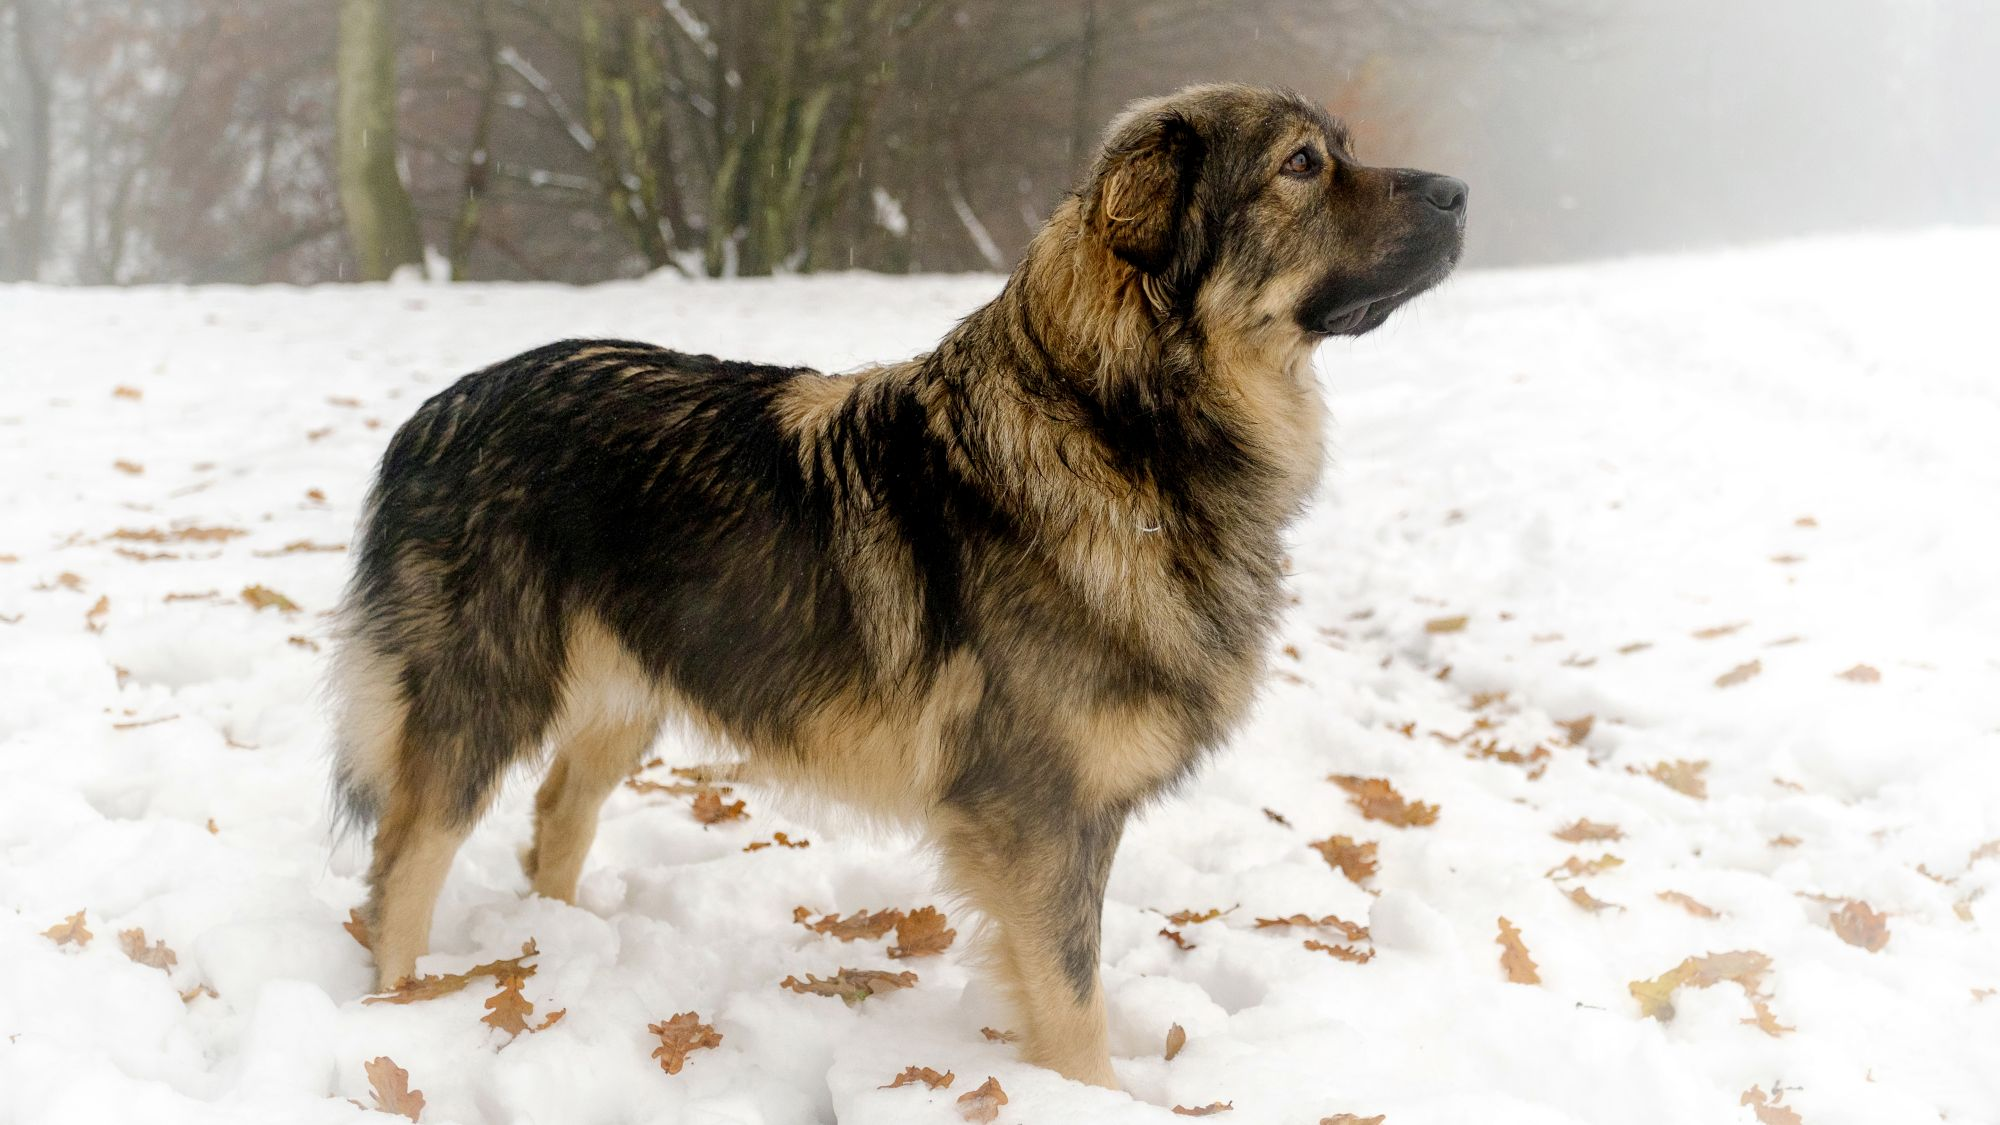 Karst Shepherd Dog stood head looking up in snow